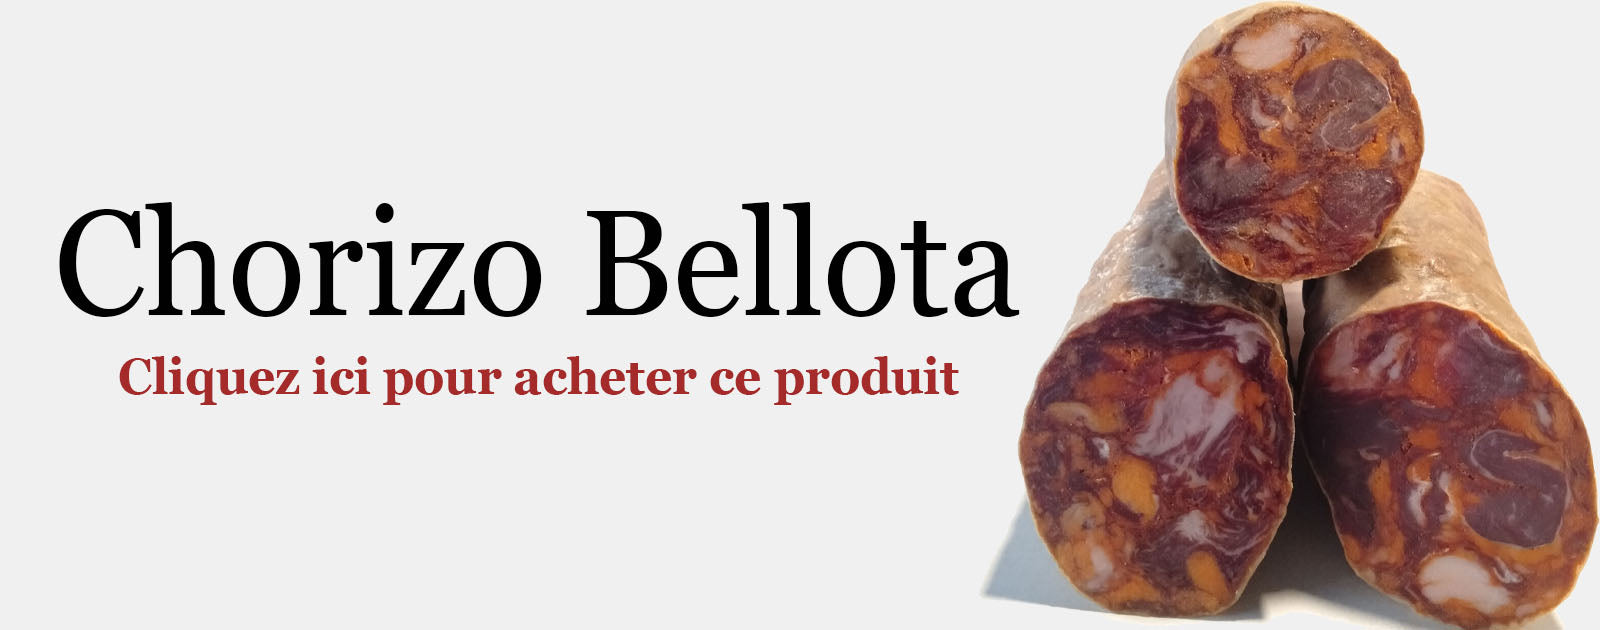 fiche produit chorizo bellota